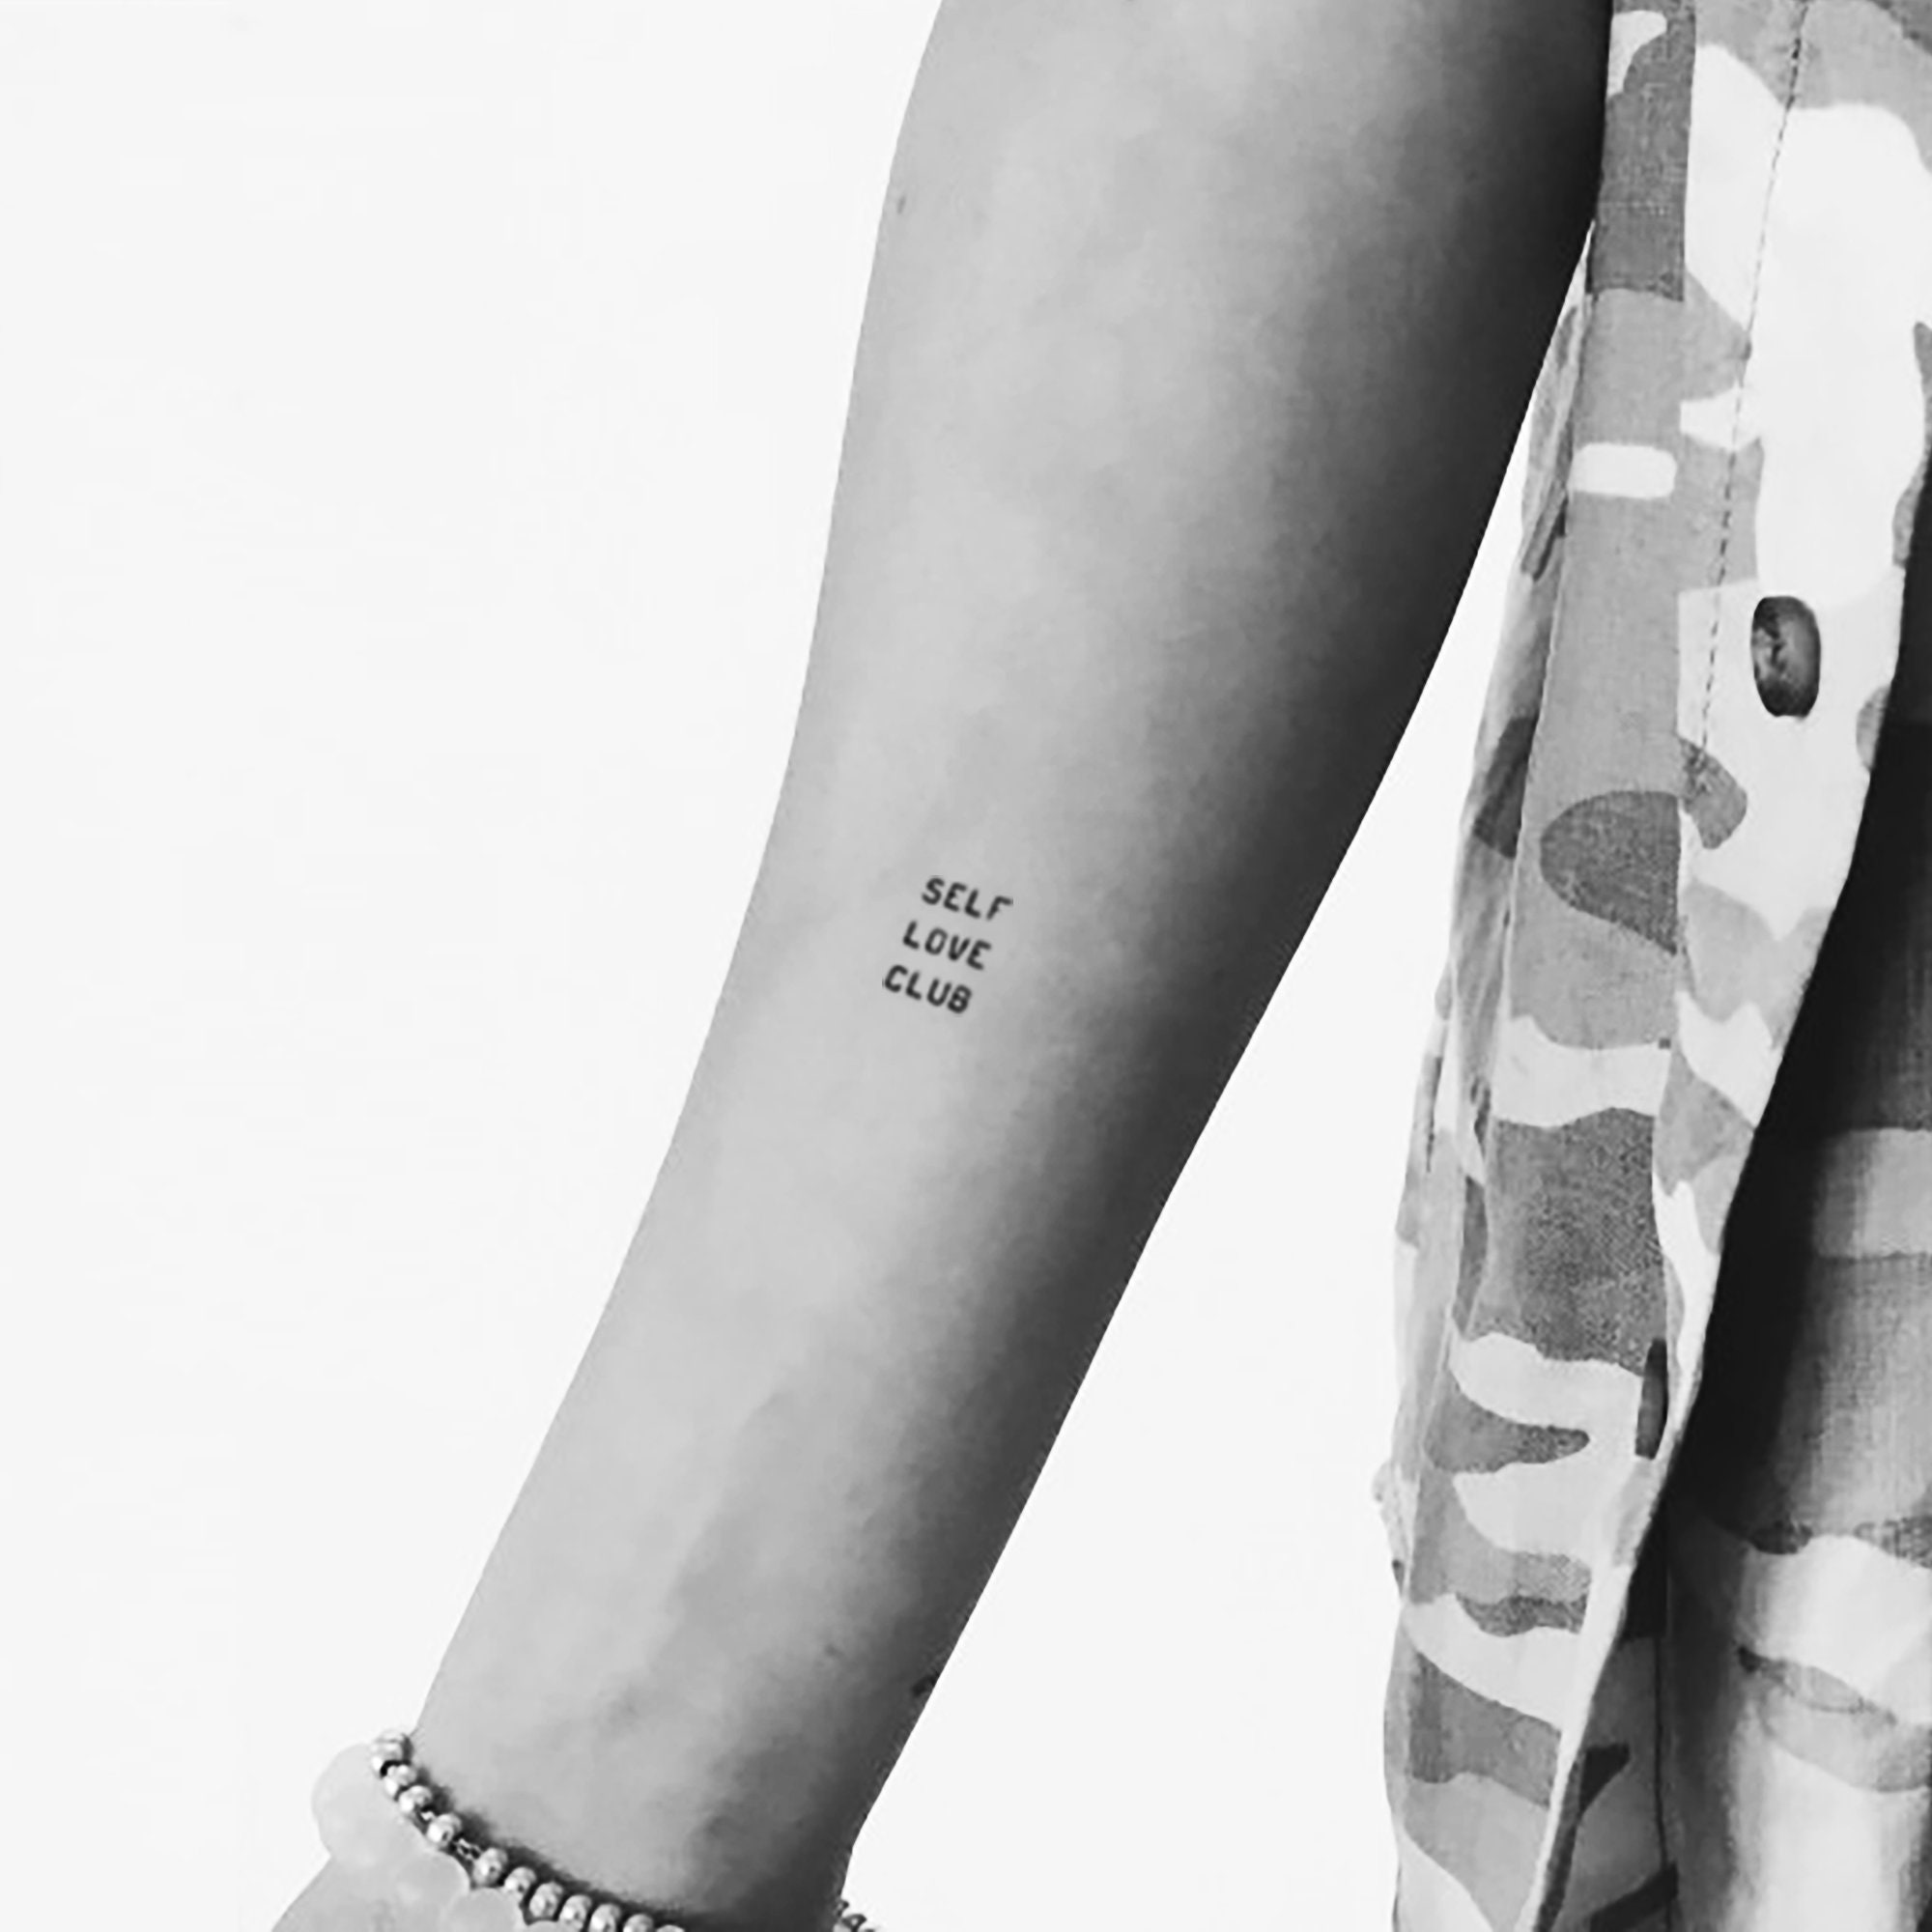 Minimalist self love tattoo on the rib